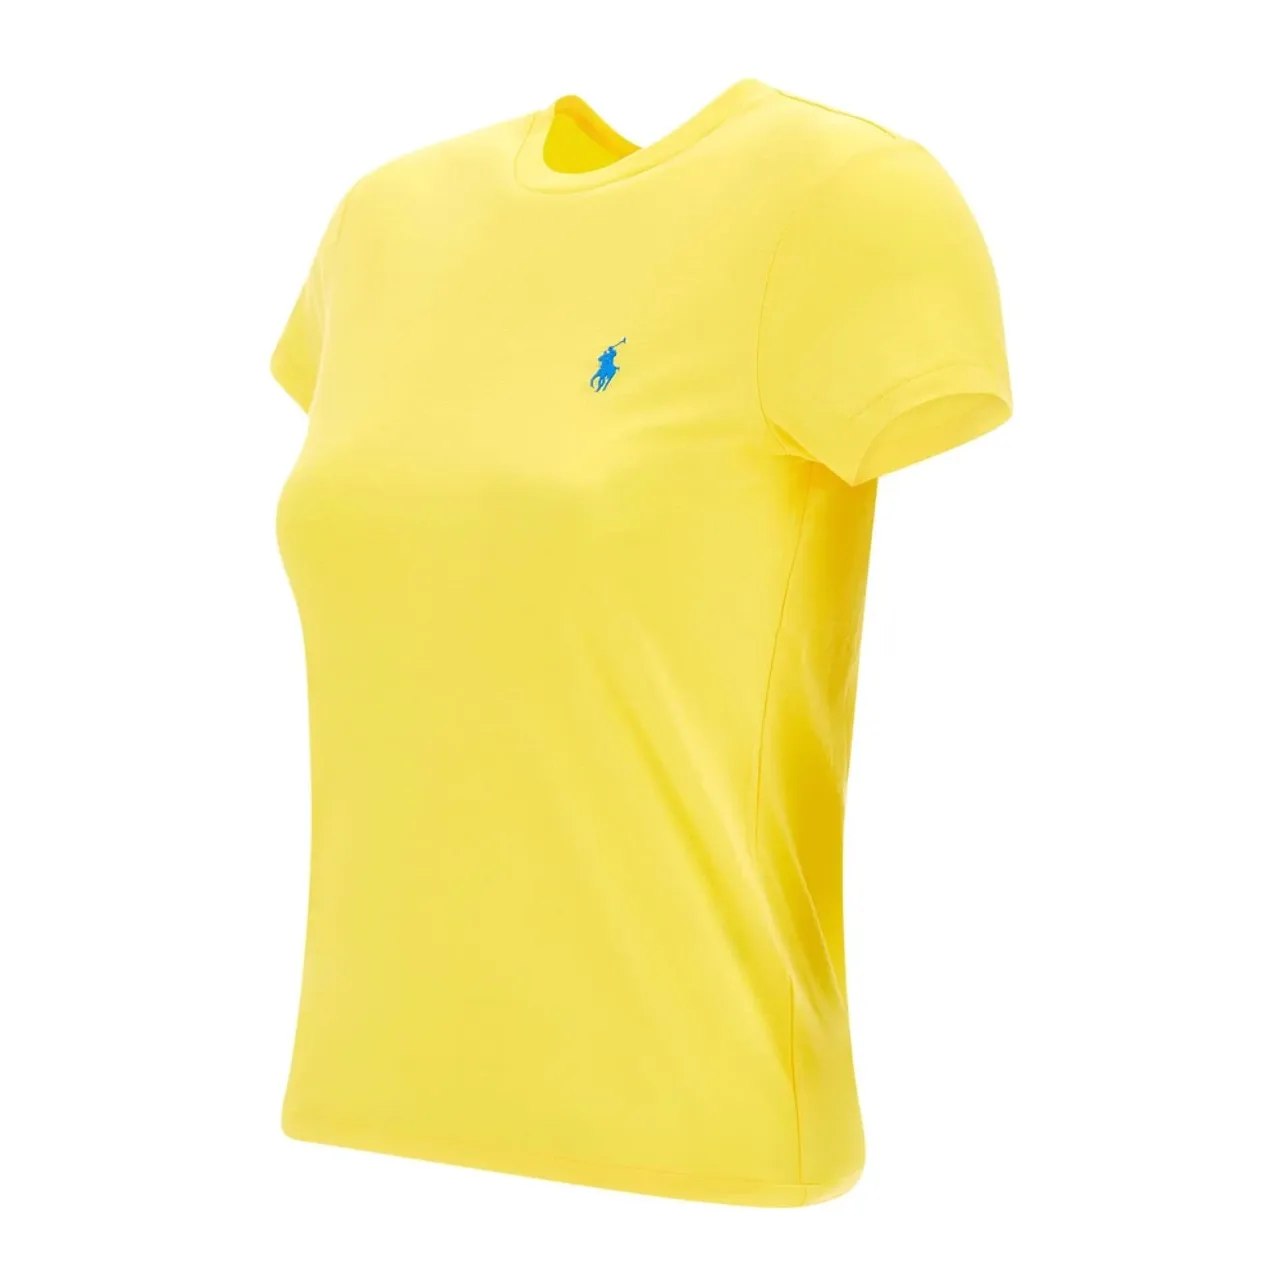 Damen Lemon Gelbes Polo T-Shirt Ralph Lauren